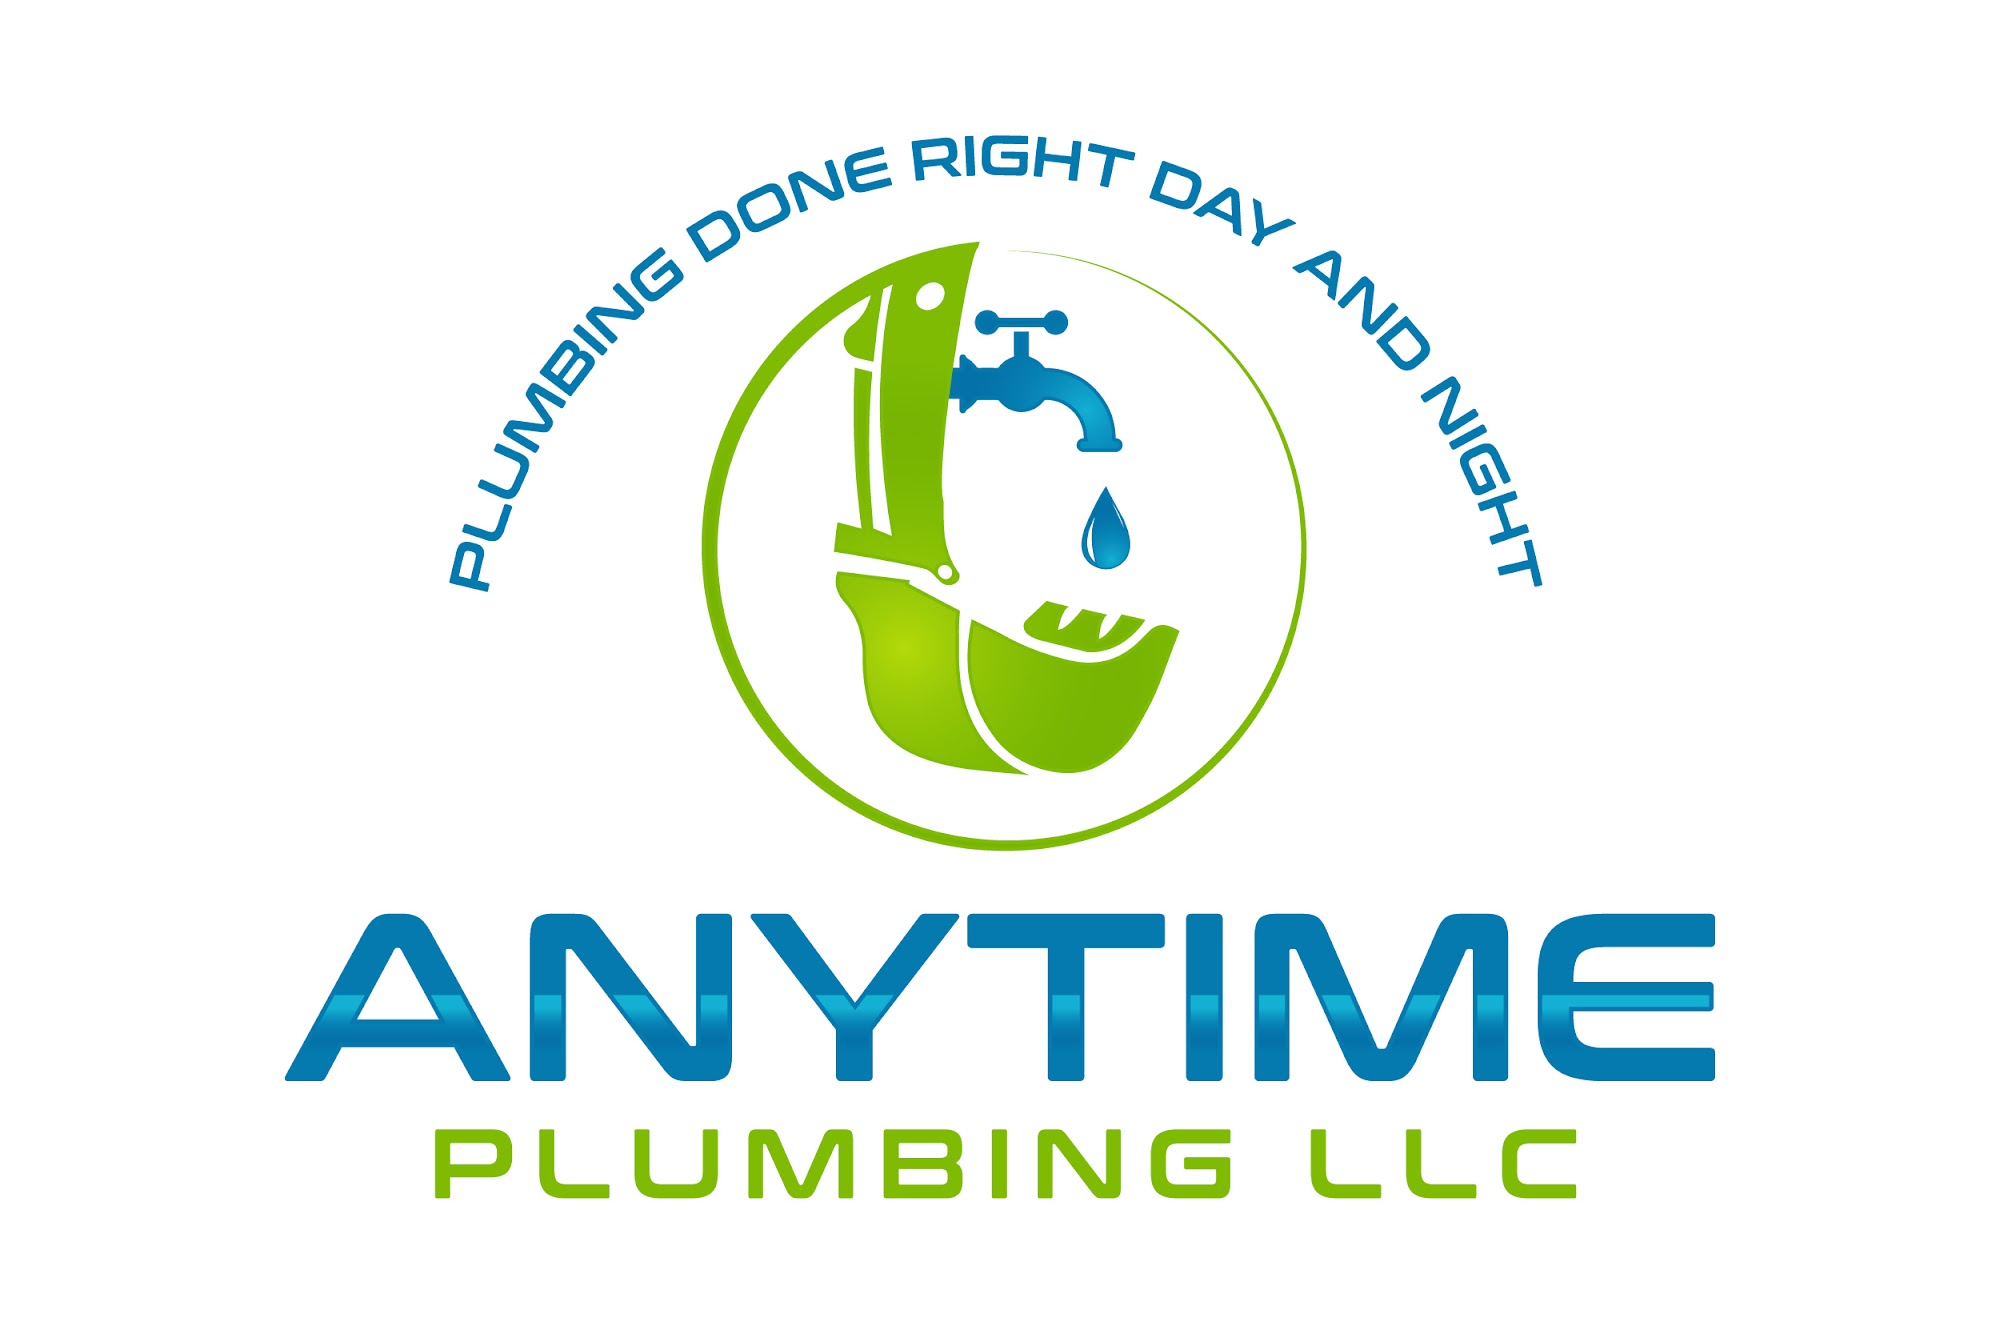 Anytime Plumbing, LLC